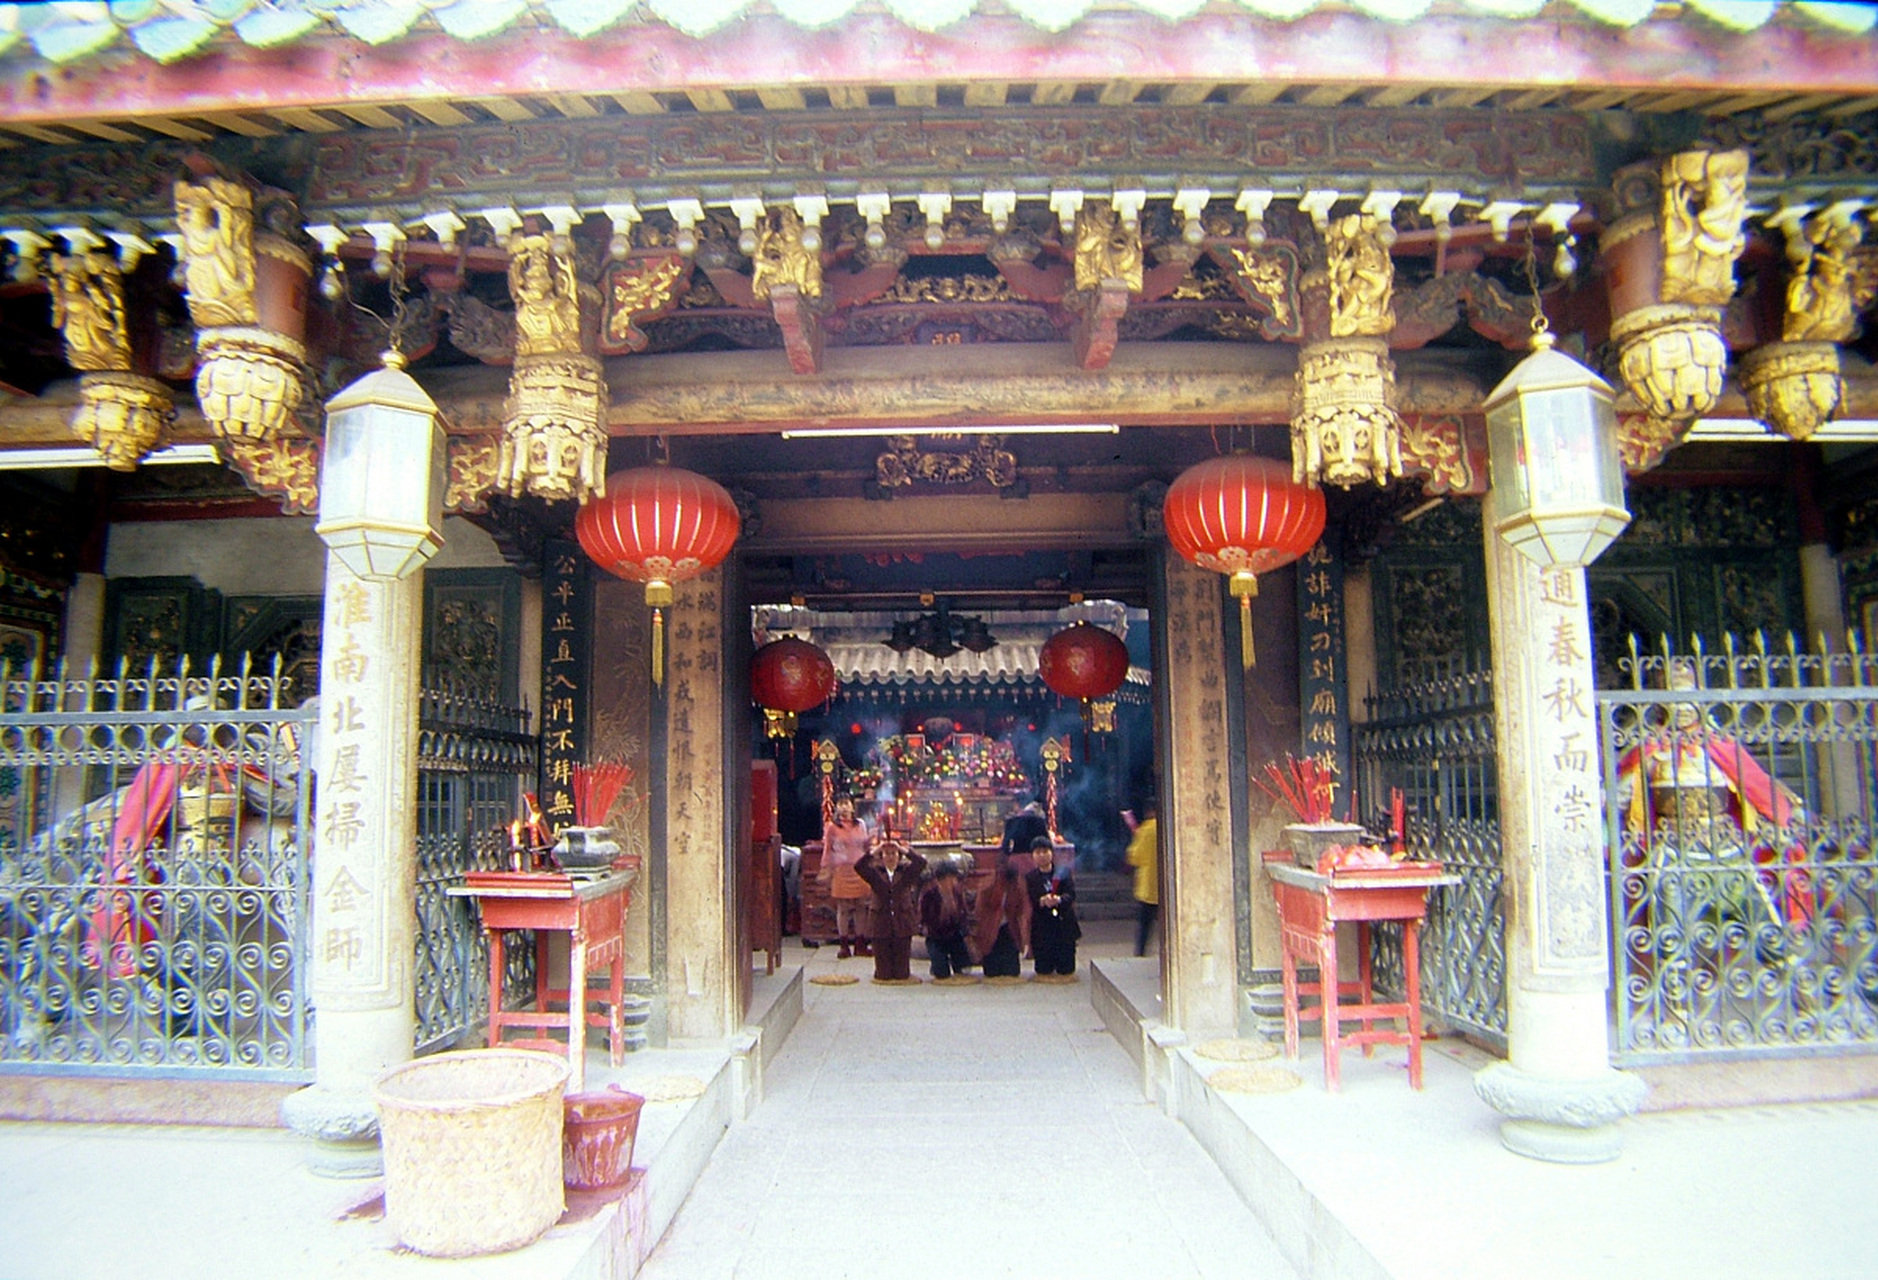 在广州市番禺区小谷围街道,有一座古老而庄重的祠堂,它的名字叫北亭